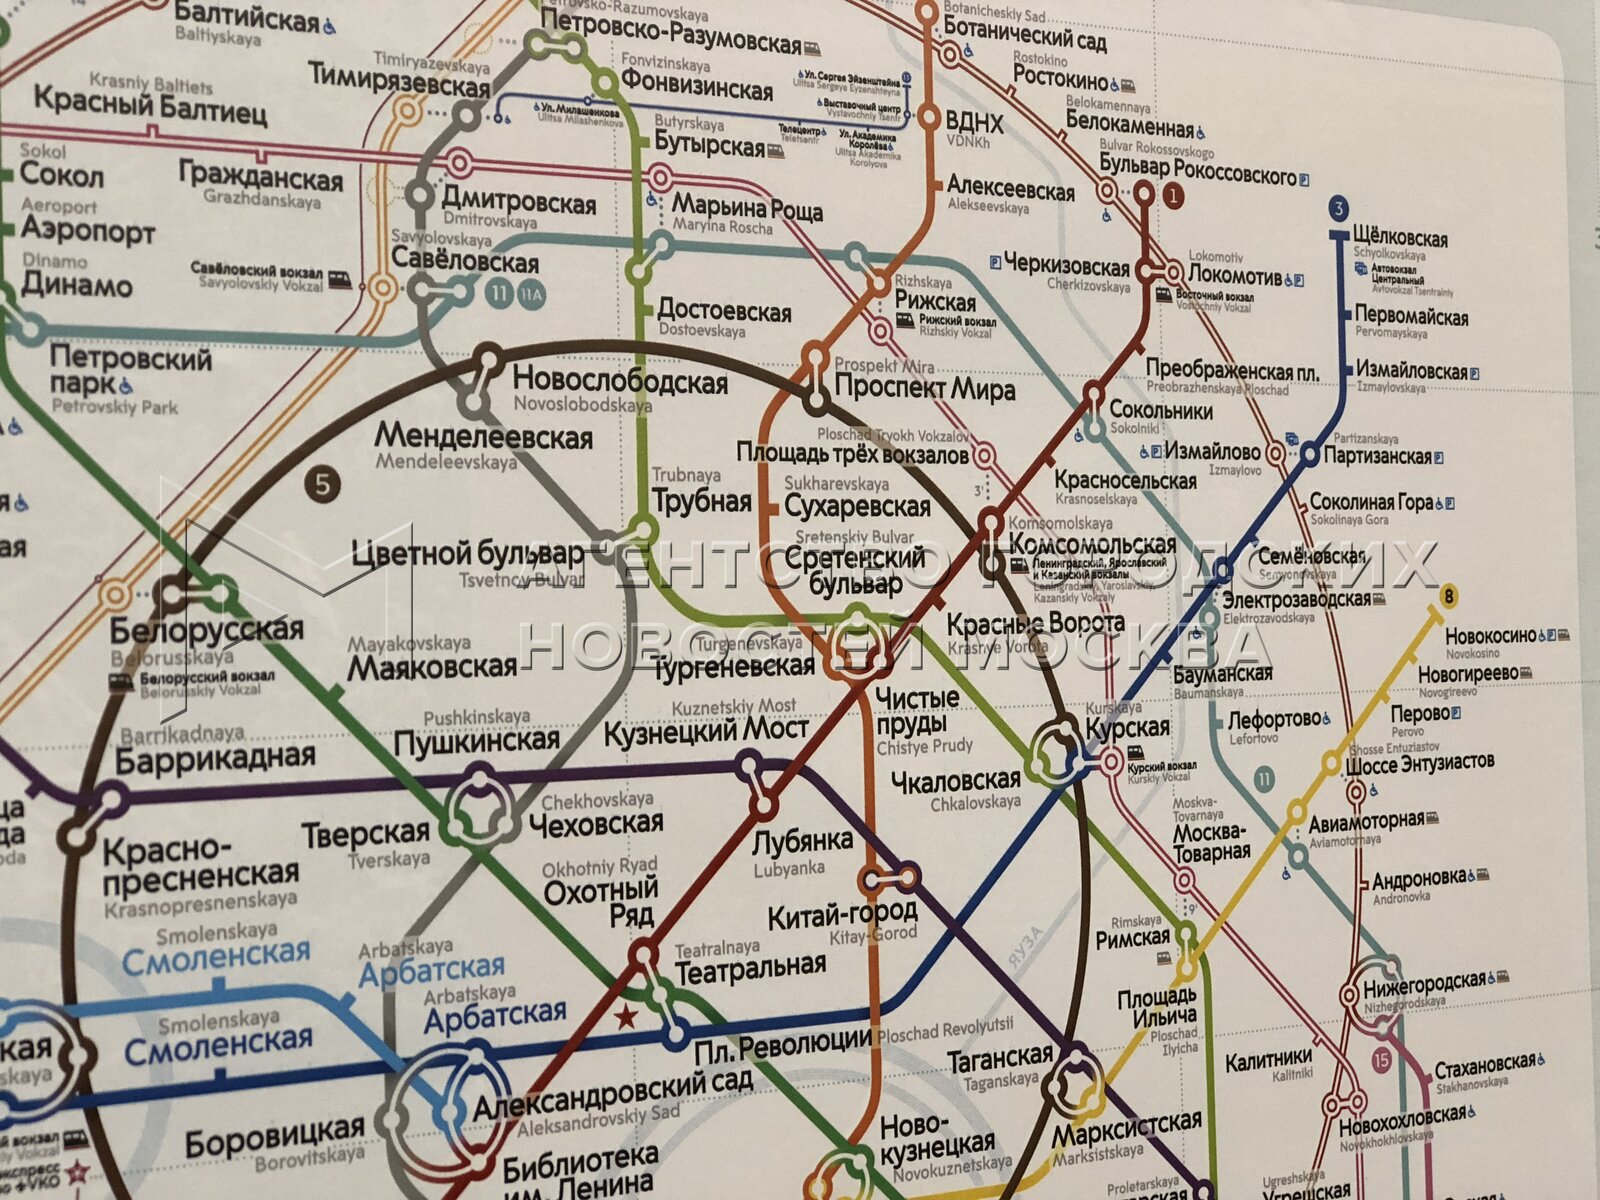 бкл метро схема на карте москвы